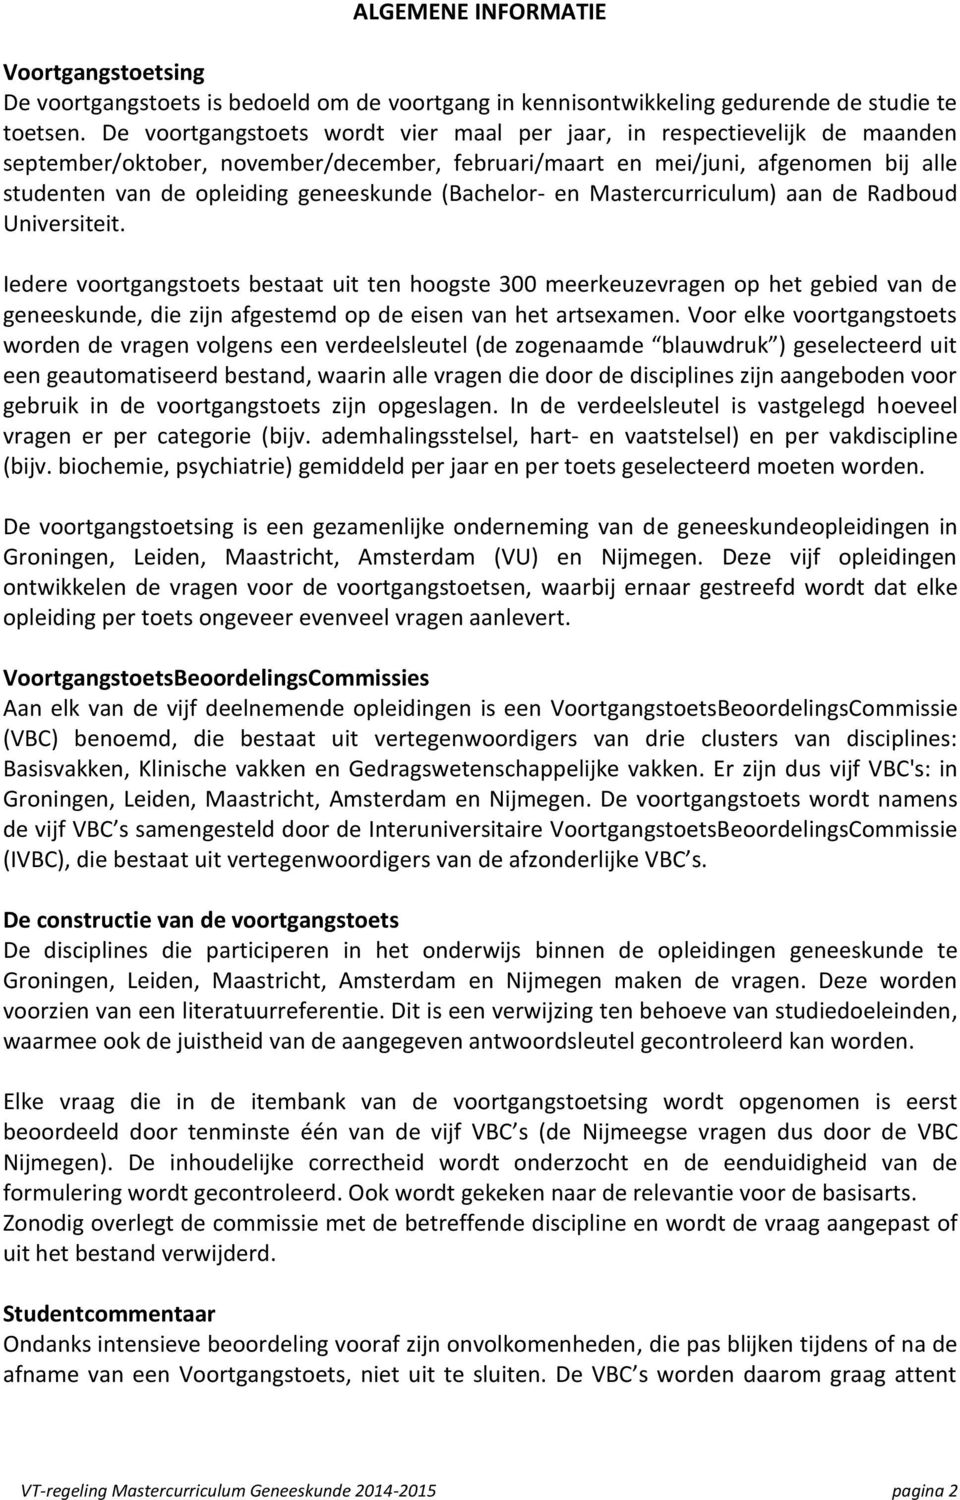 (Bachelor- en Mastercurriculum) aan de Radboud Universiteit.